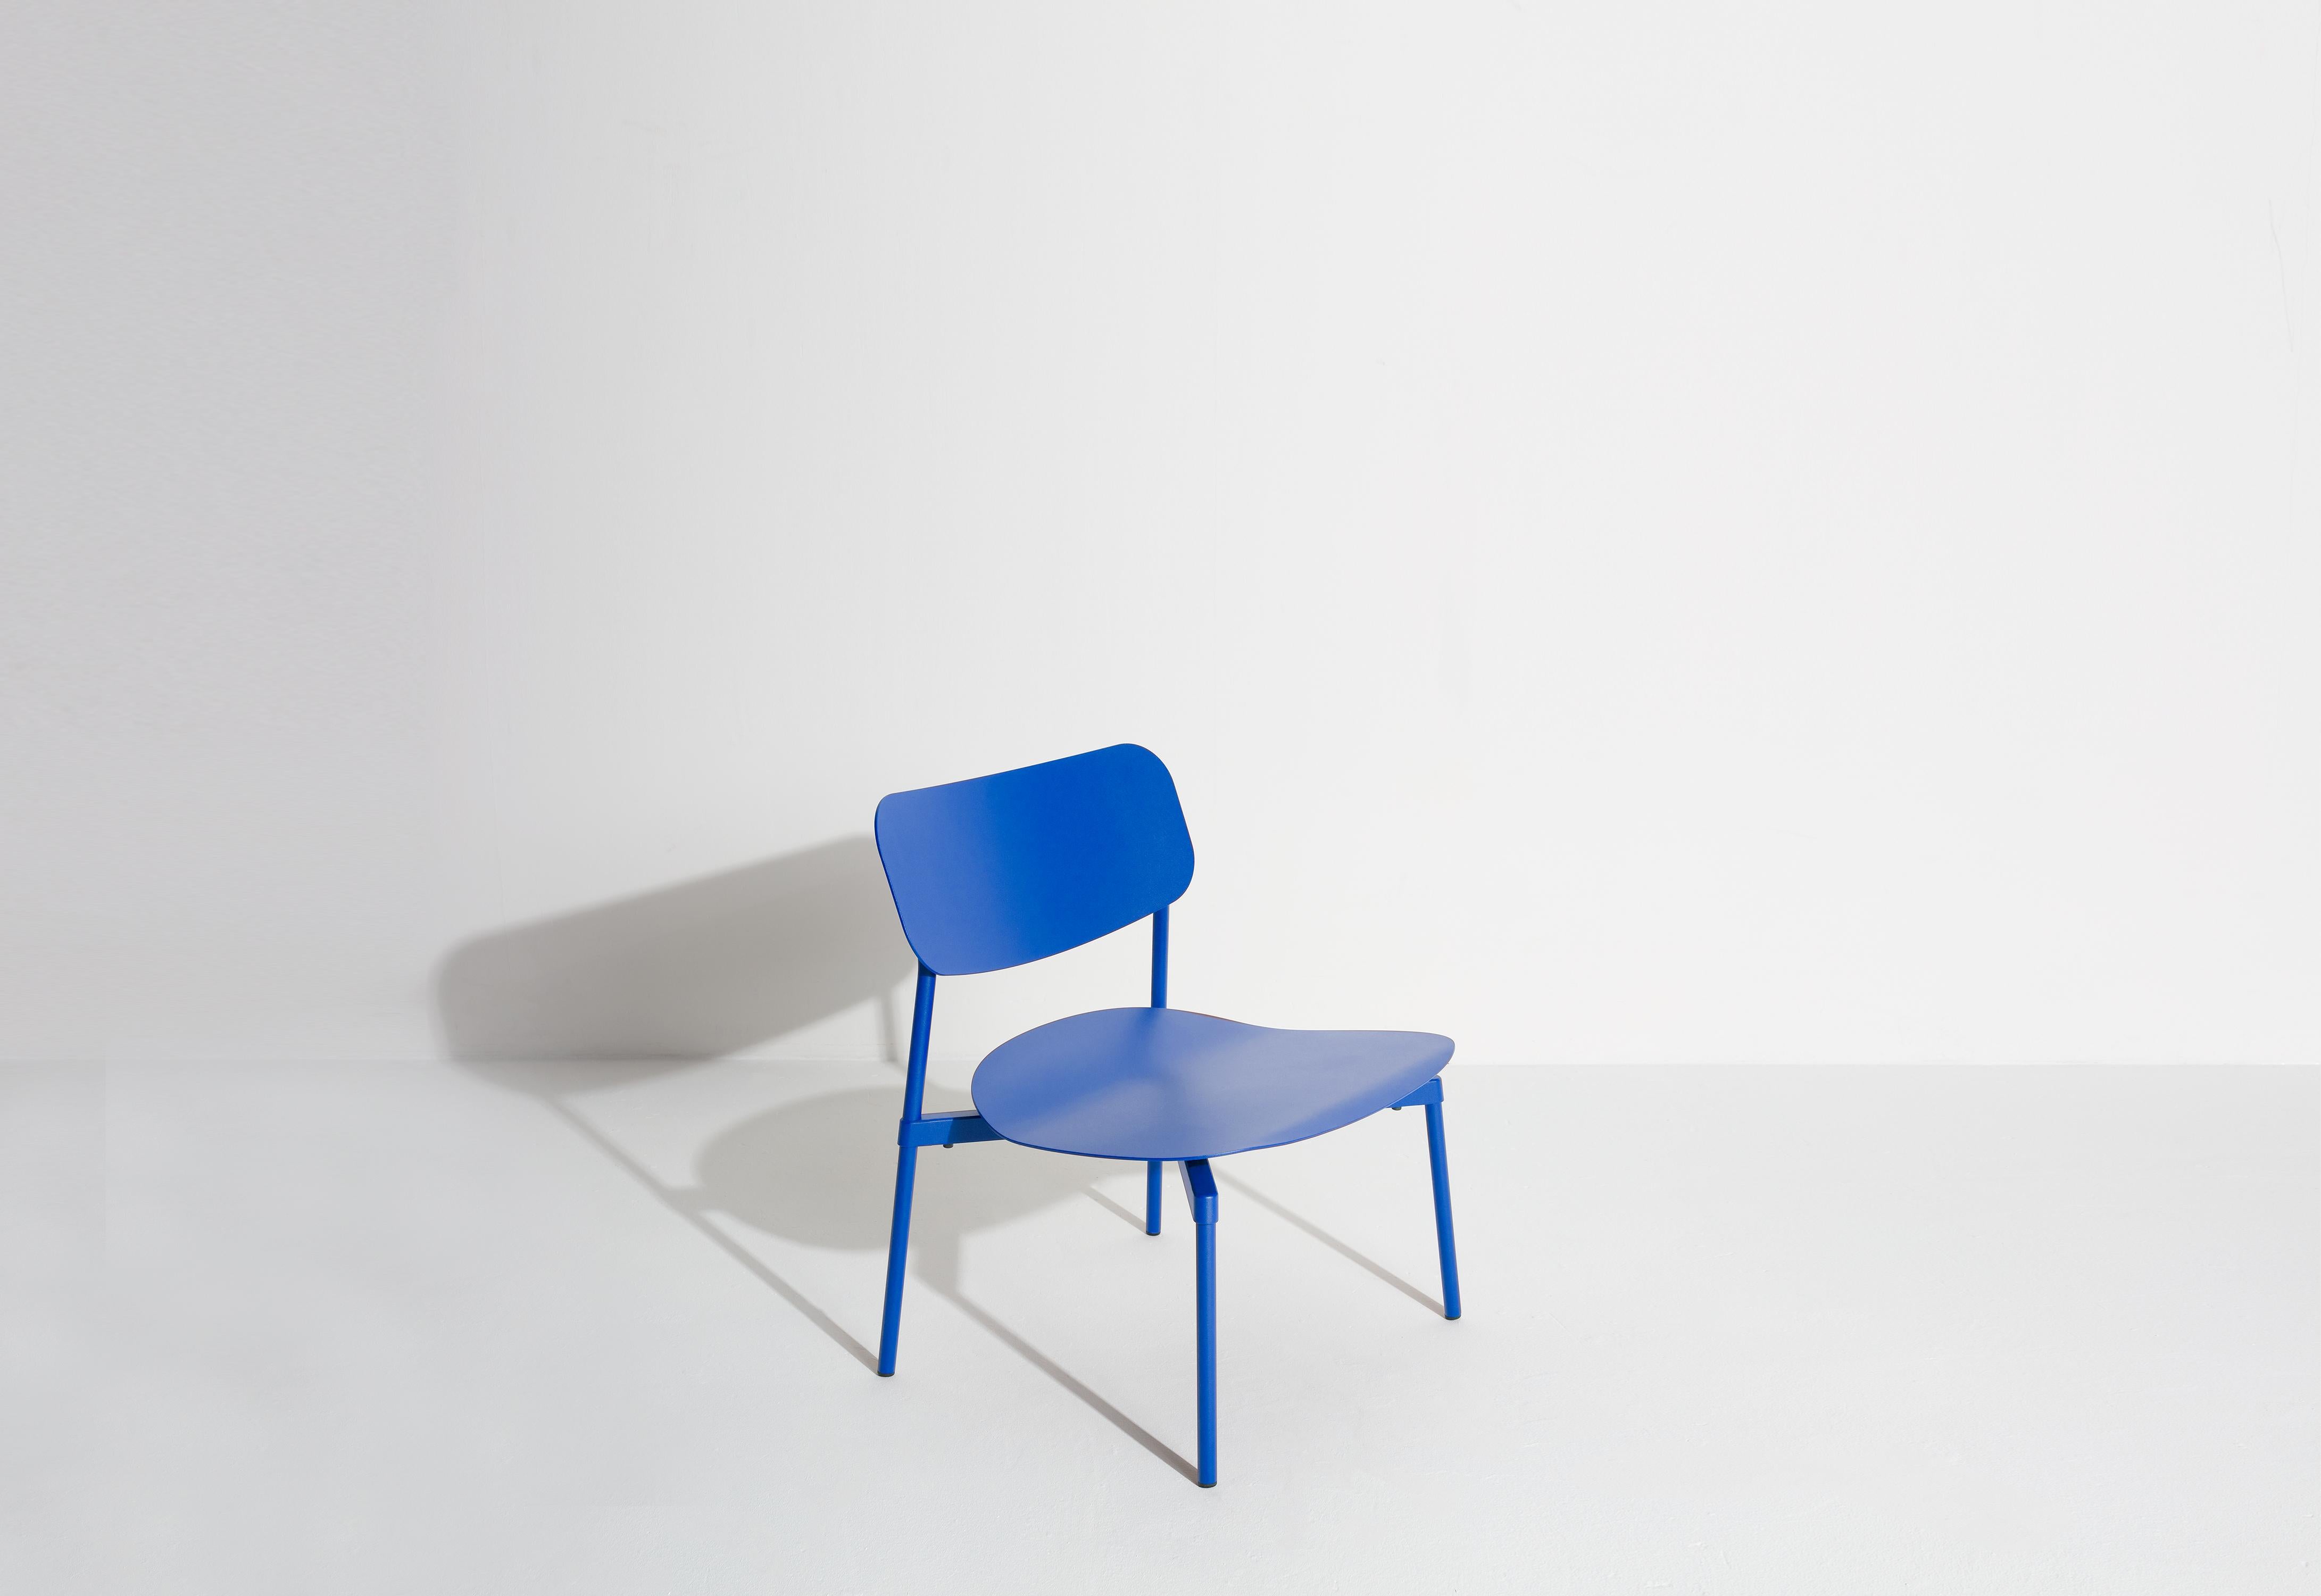 Petite Friture Fromme Lounge Armchair in Blue Aluminium by Tom Chung, 2020

La collection S/One se distingue par sa ligne épurée et son design compact. Les absorbeurs placés sous les sièges leur confèrent une flexibilité souple et très